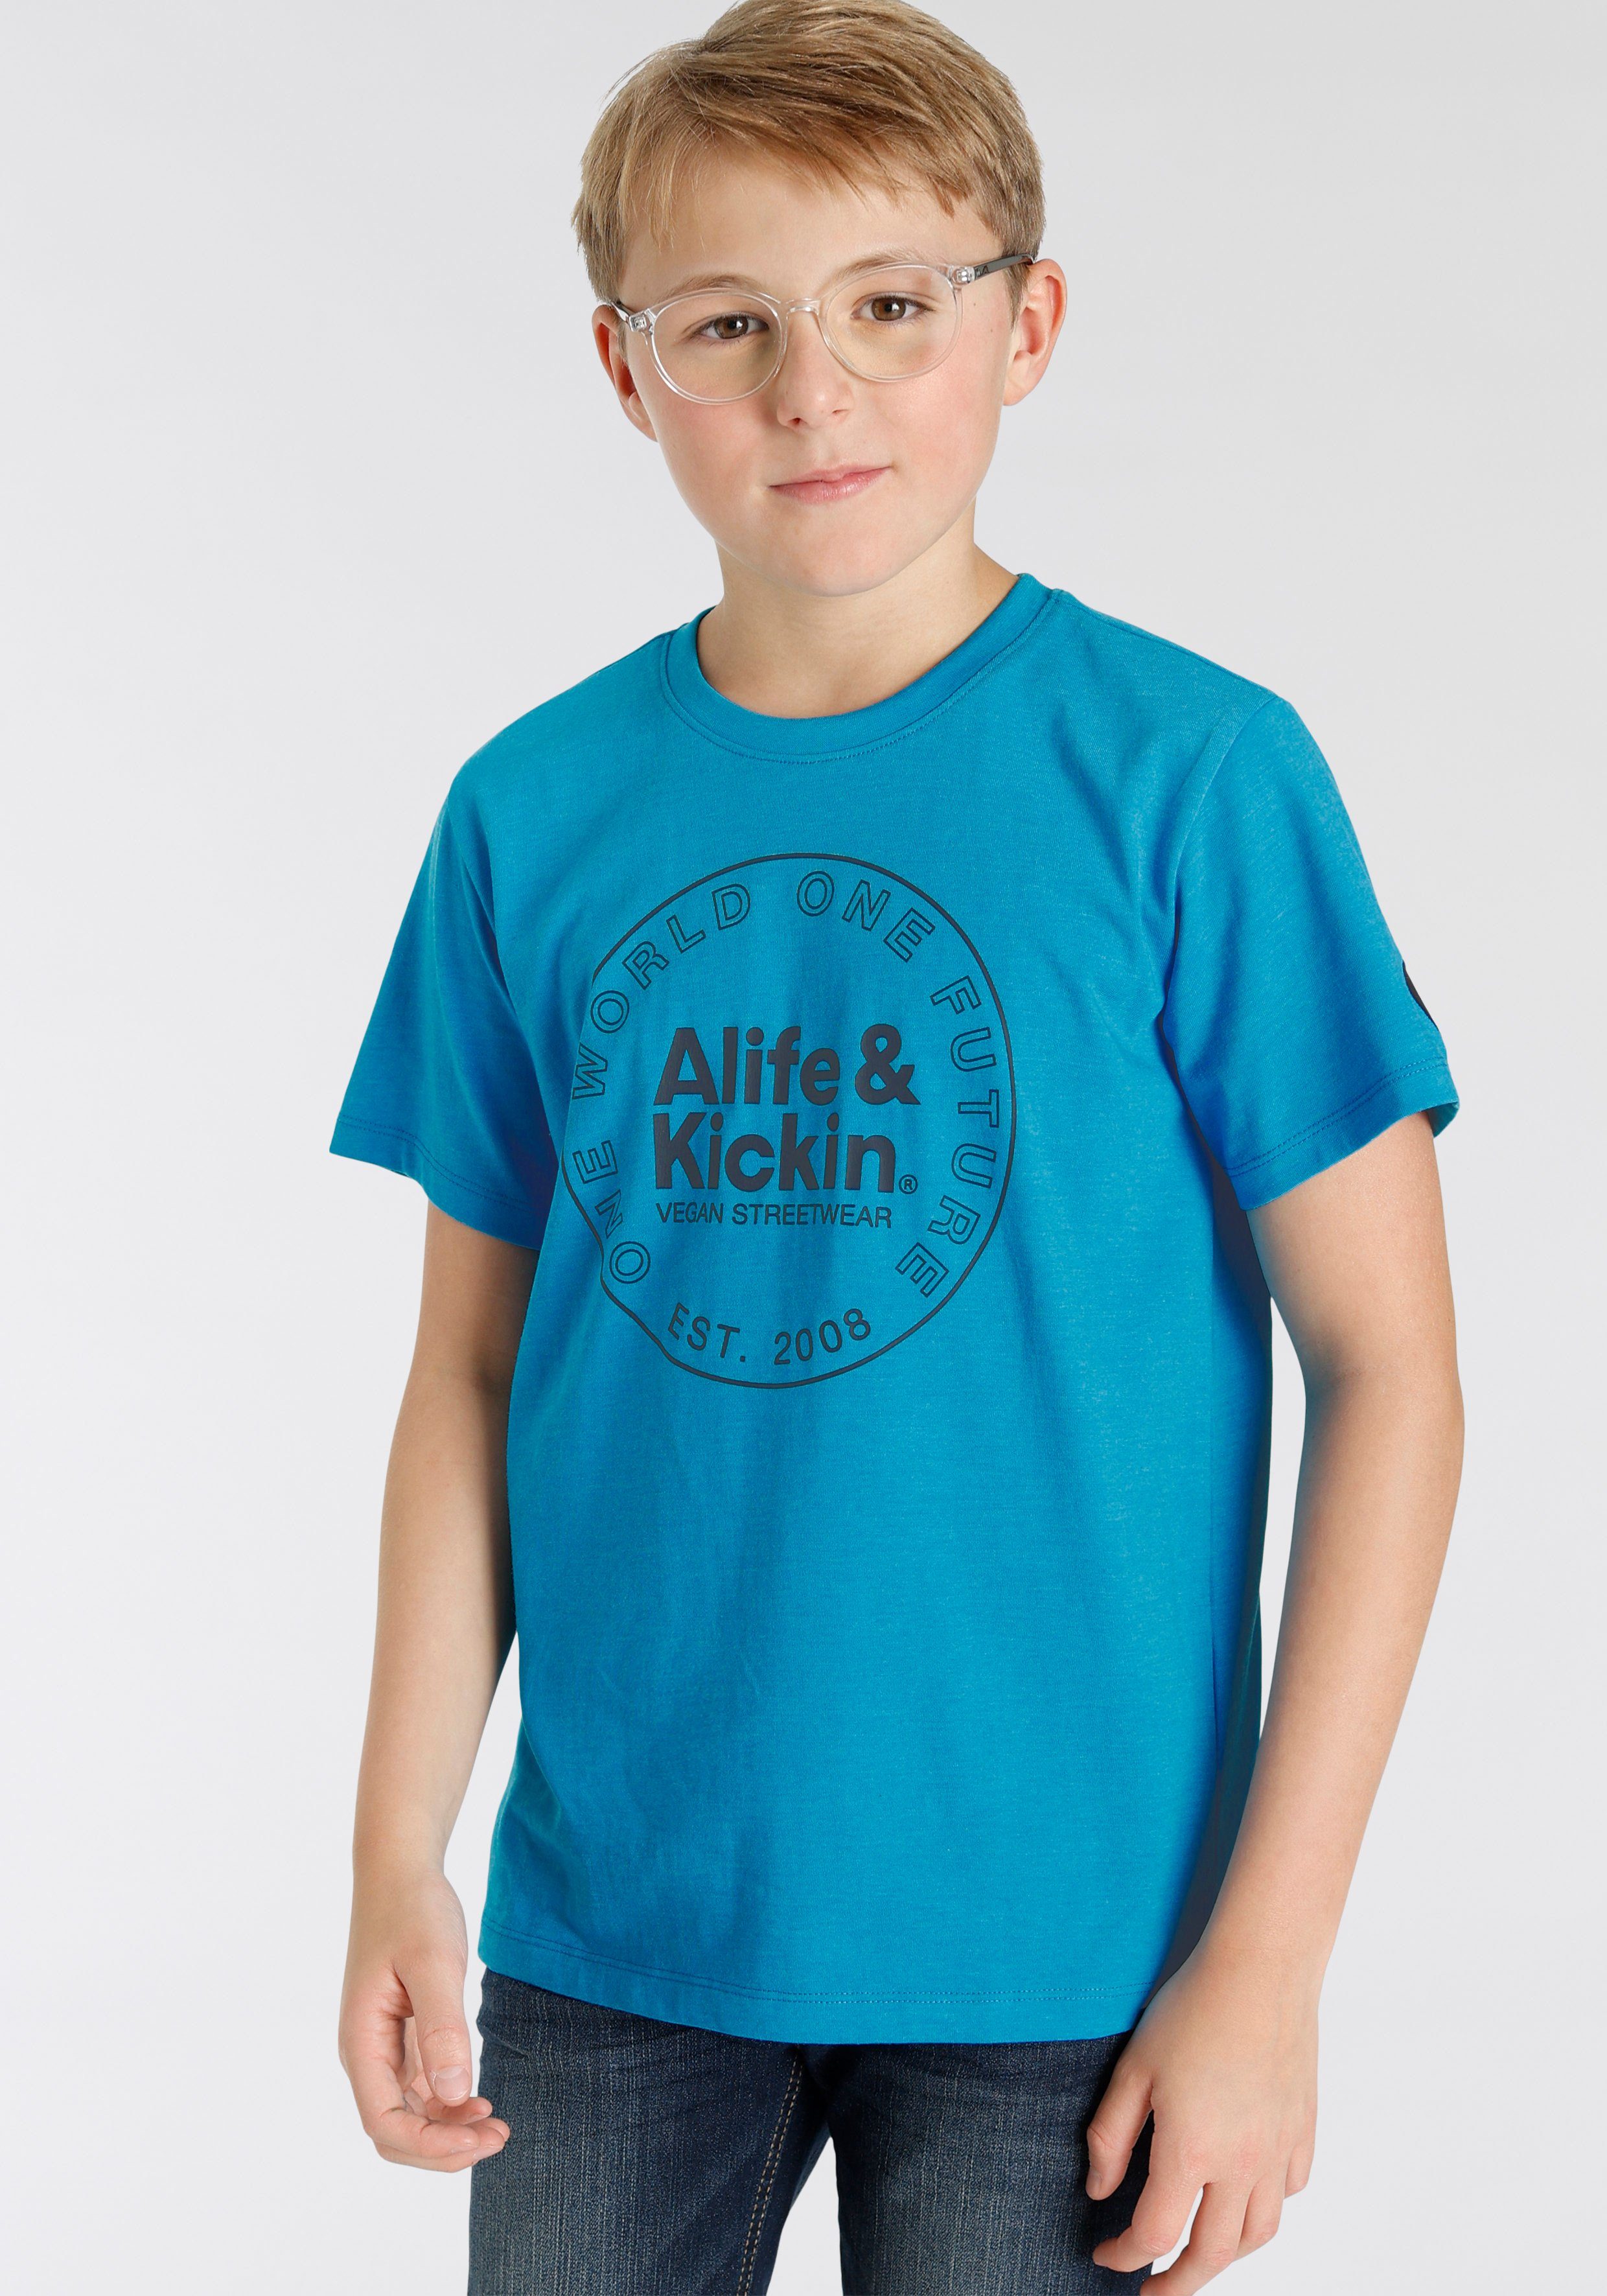 Logo-Print & Qualität, NEUE MARKE! Alife Alife&Kickin Kids in für Kickin T-Shirt melierter